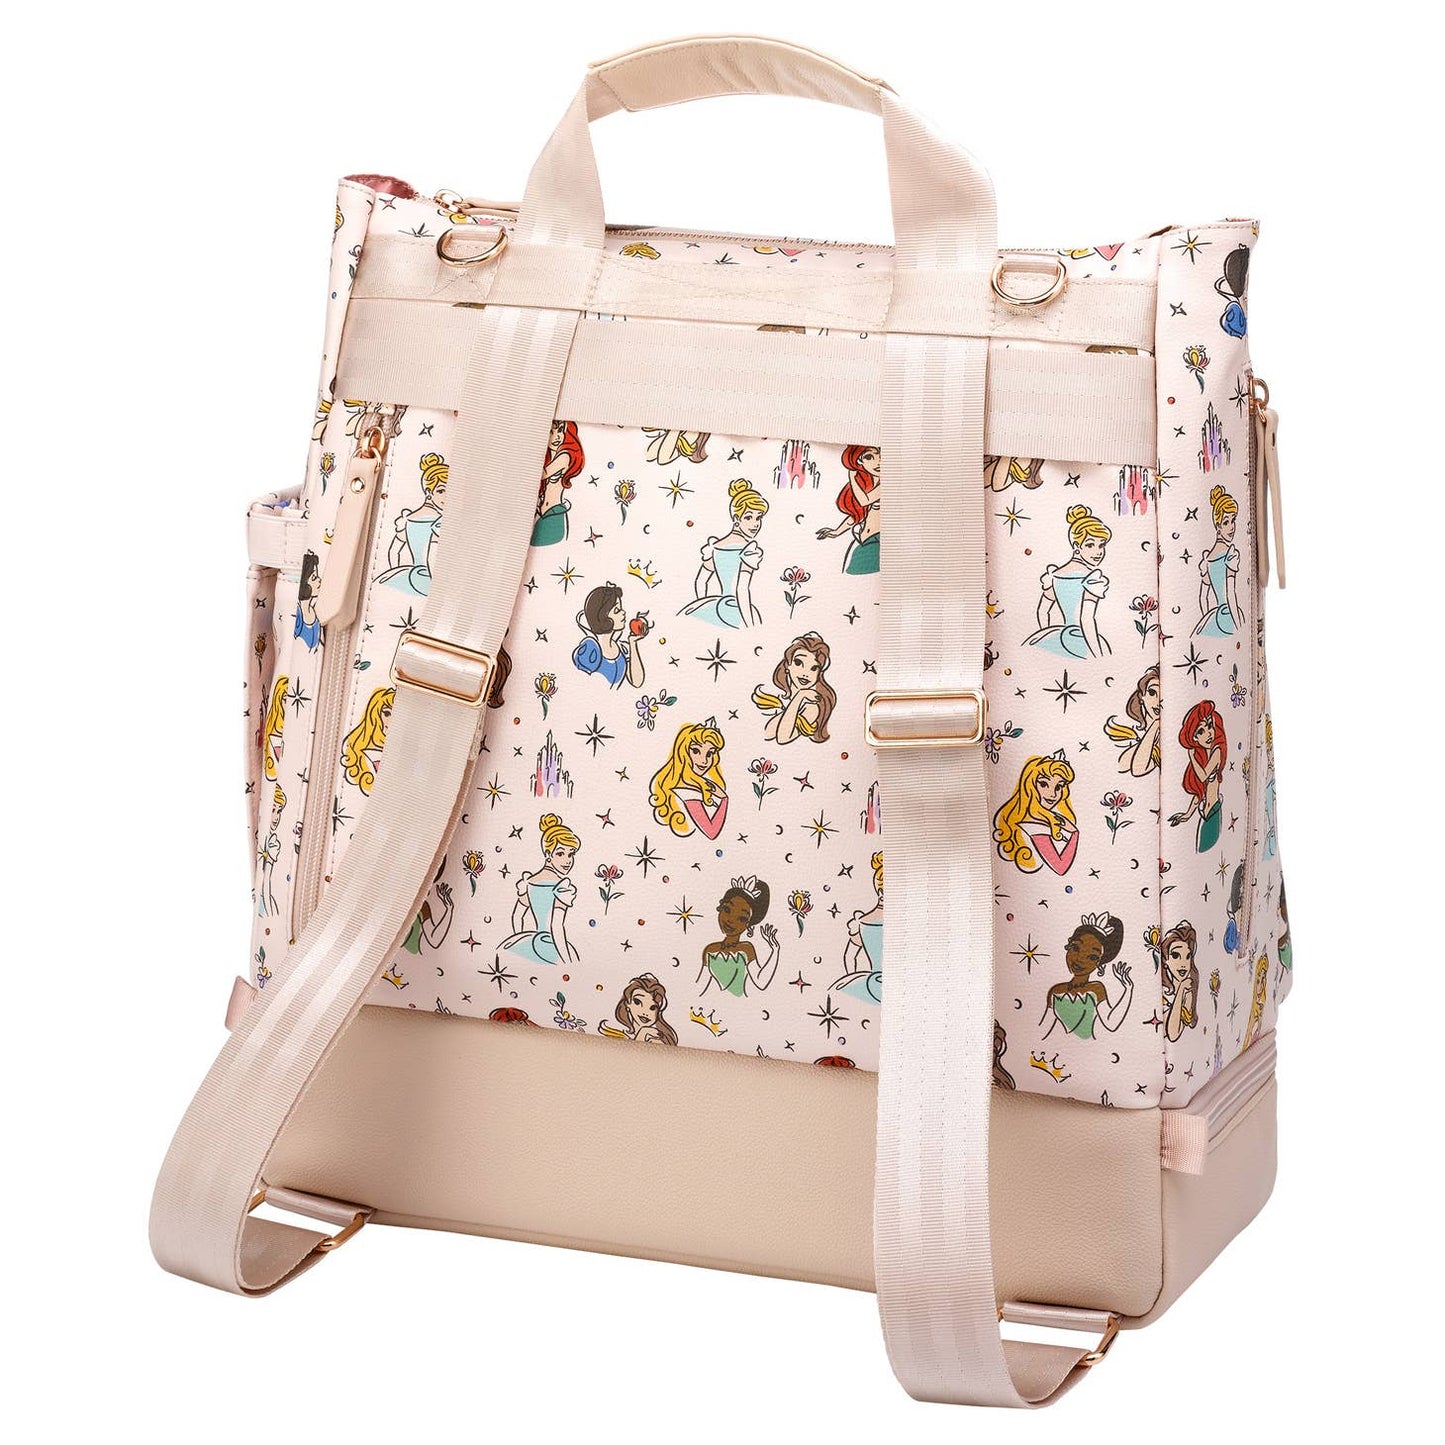 Disney Princess Diaper Bag and Backpack